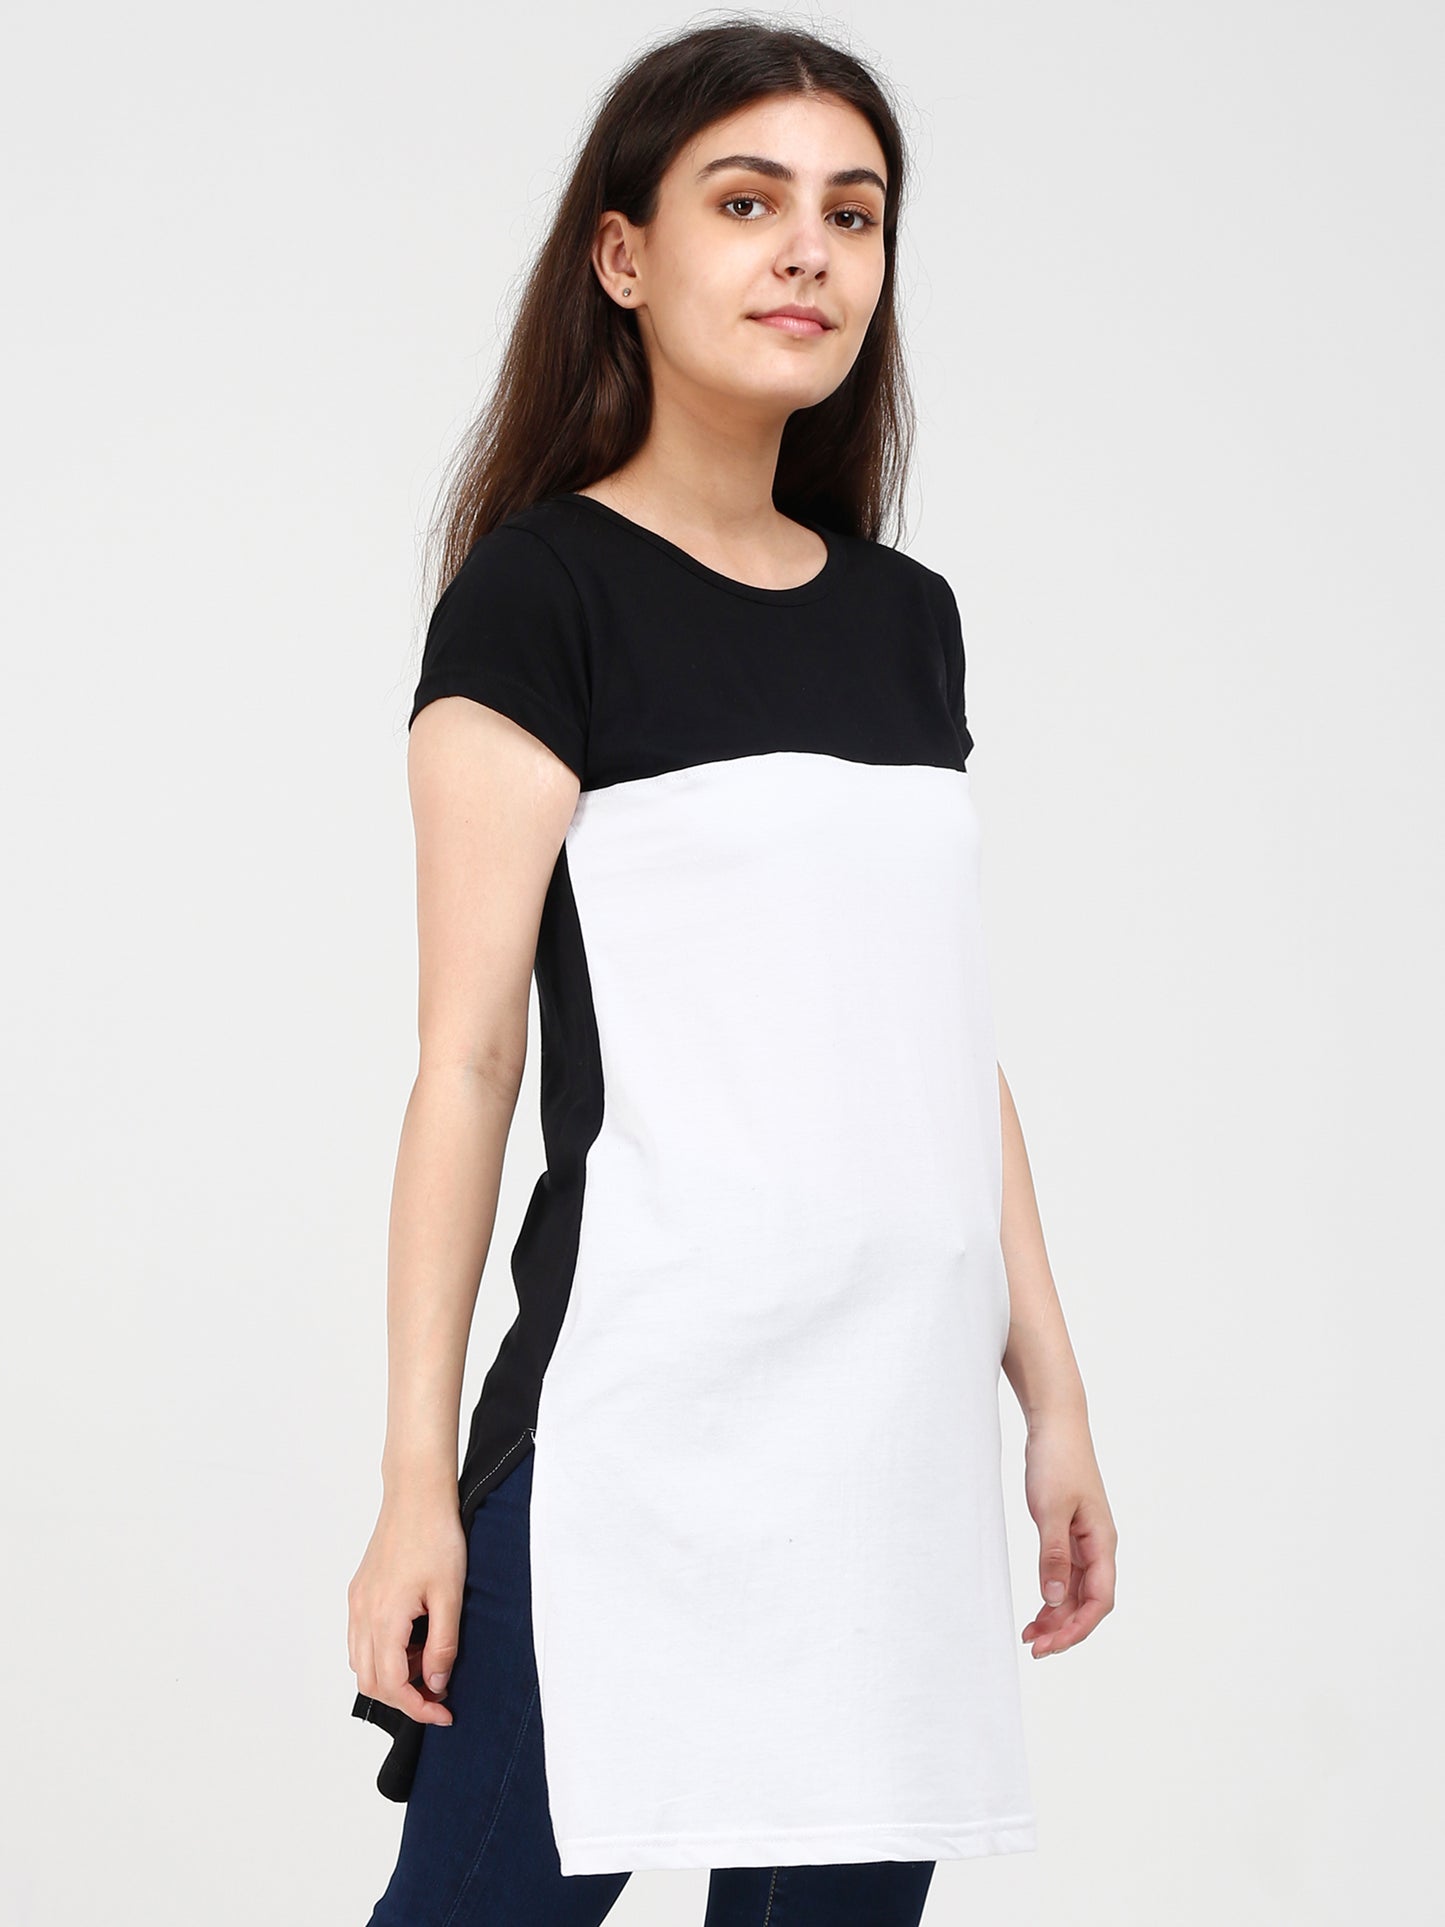 Women's Cotton Color Block Blackwhite Color Long Top